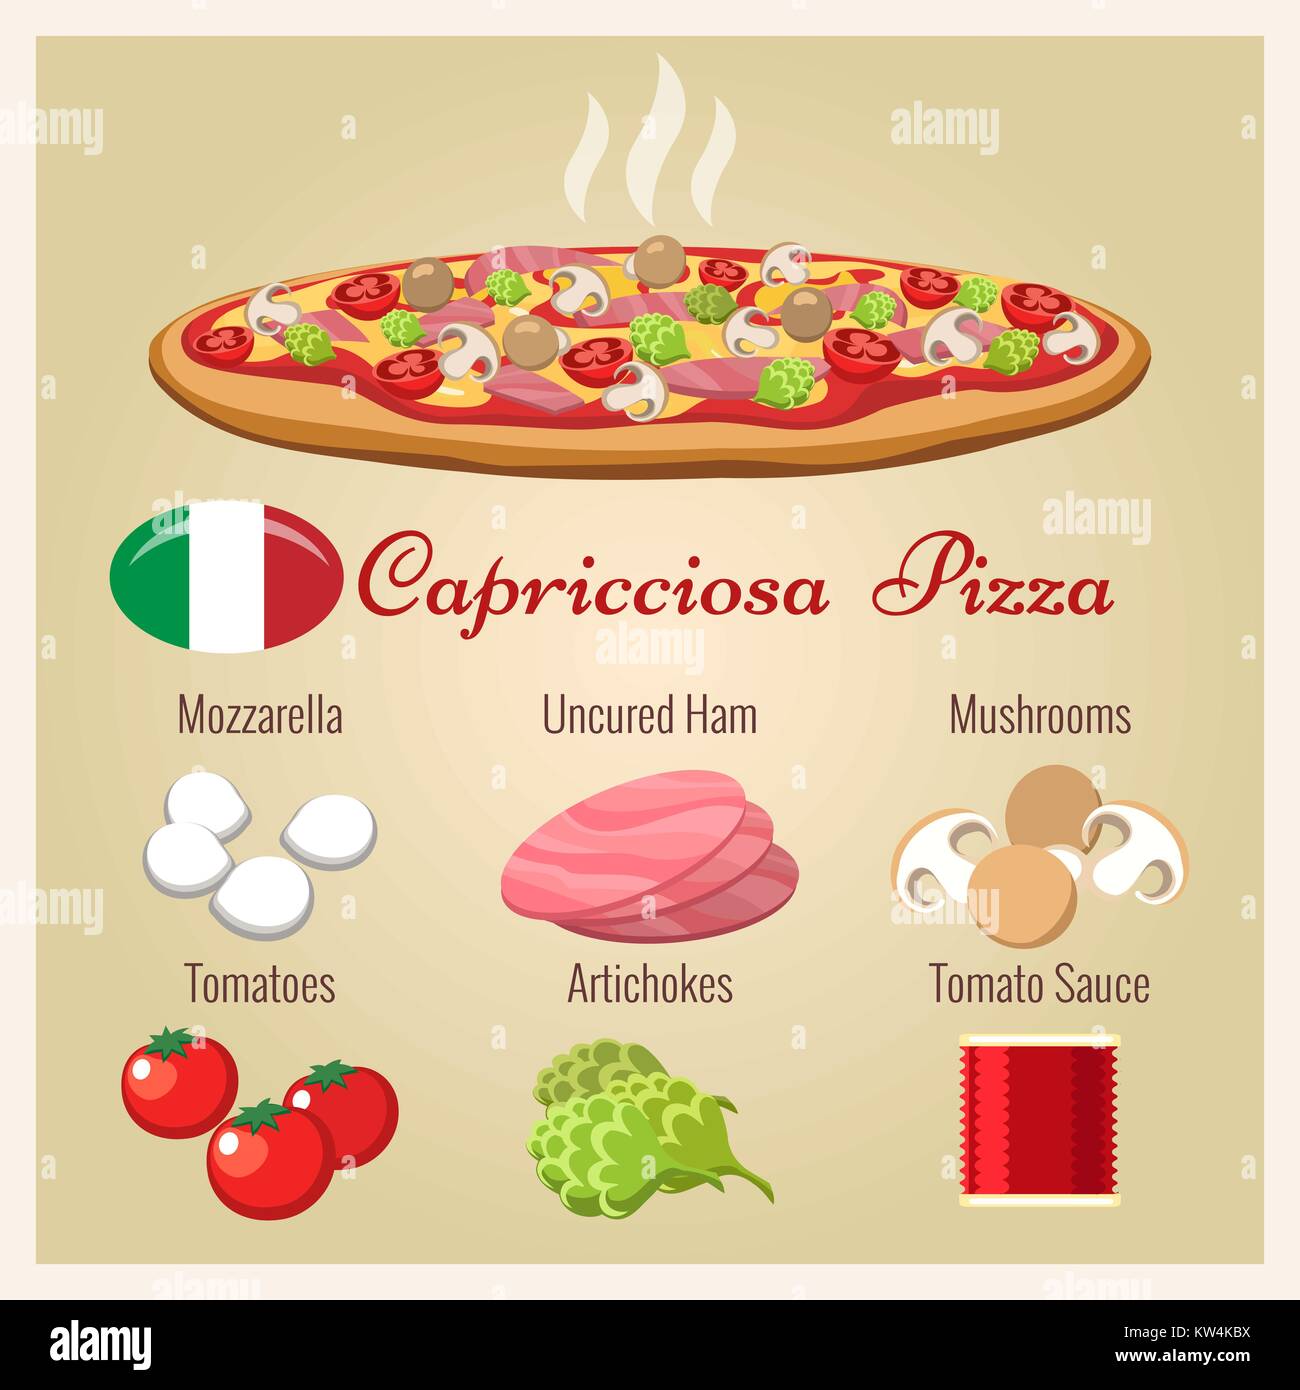 Pizza capricciosa. Cocina italiana pizza preparada con queso mozzarella y jamón cocido italiano, champiñones, alcachofas y tomate, ilustración vectorial Ilustración del Vector